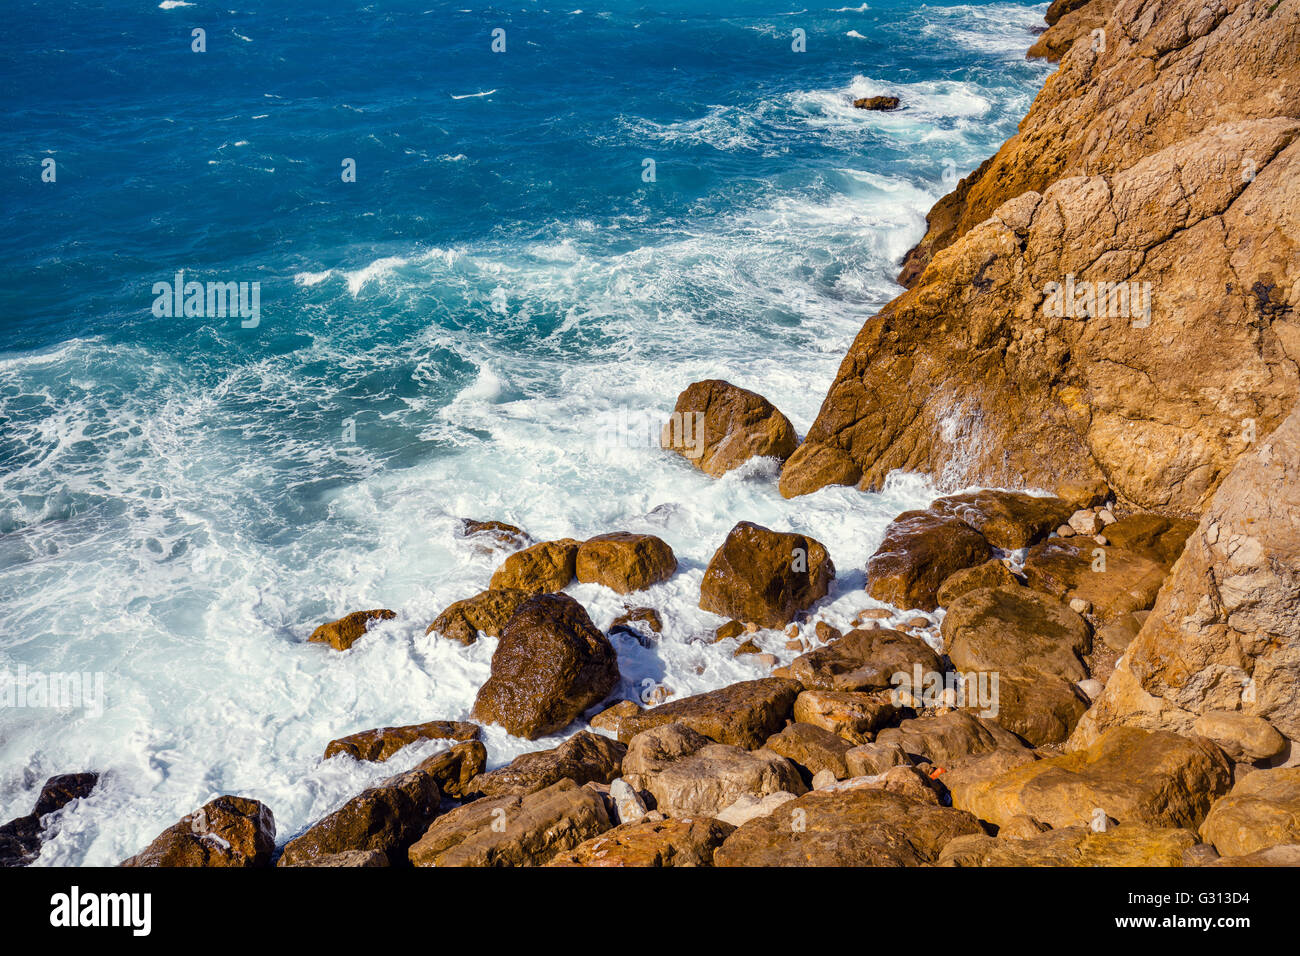 Rocky seashore. Cote d'Azur. D'azur, Nice, France Banque D'Images